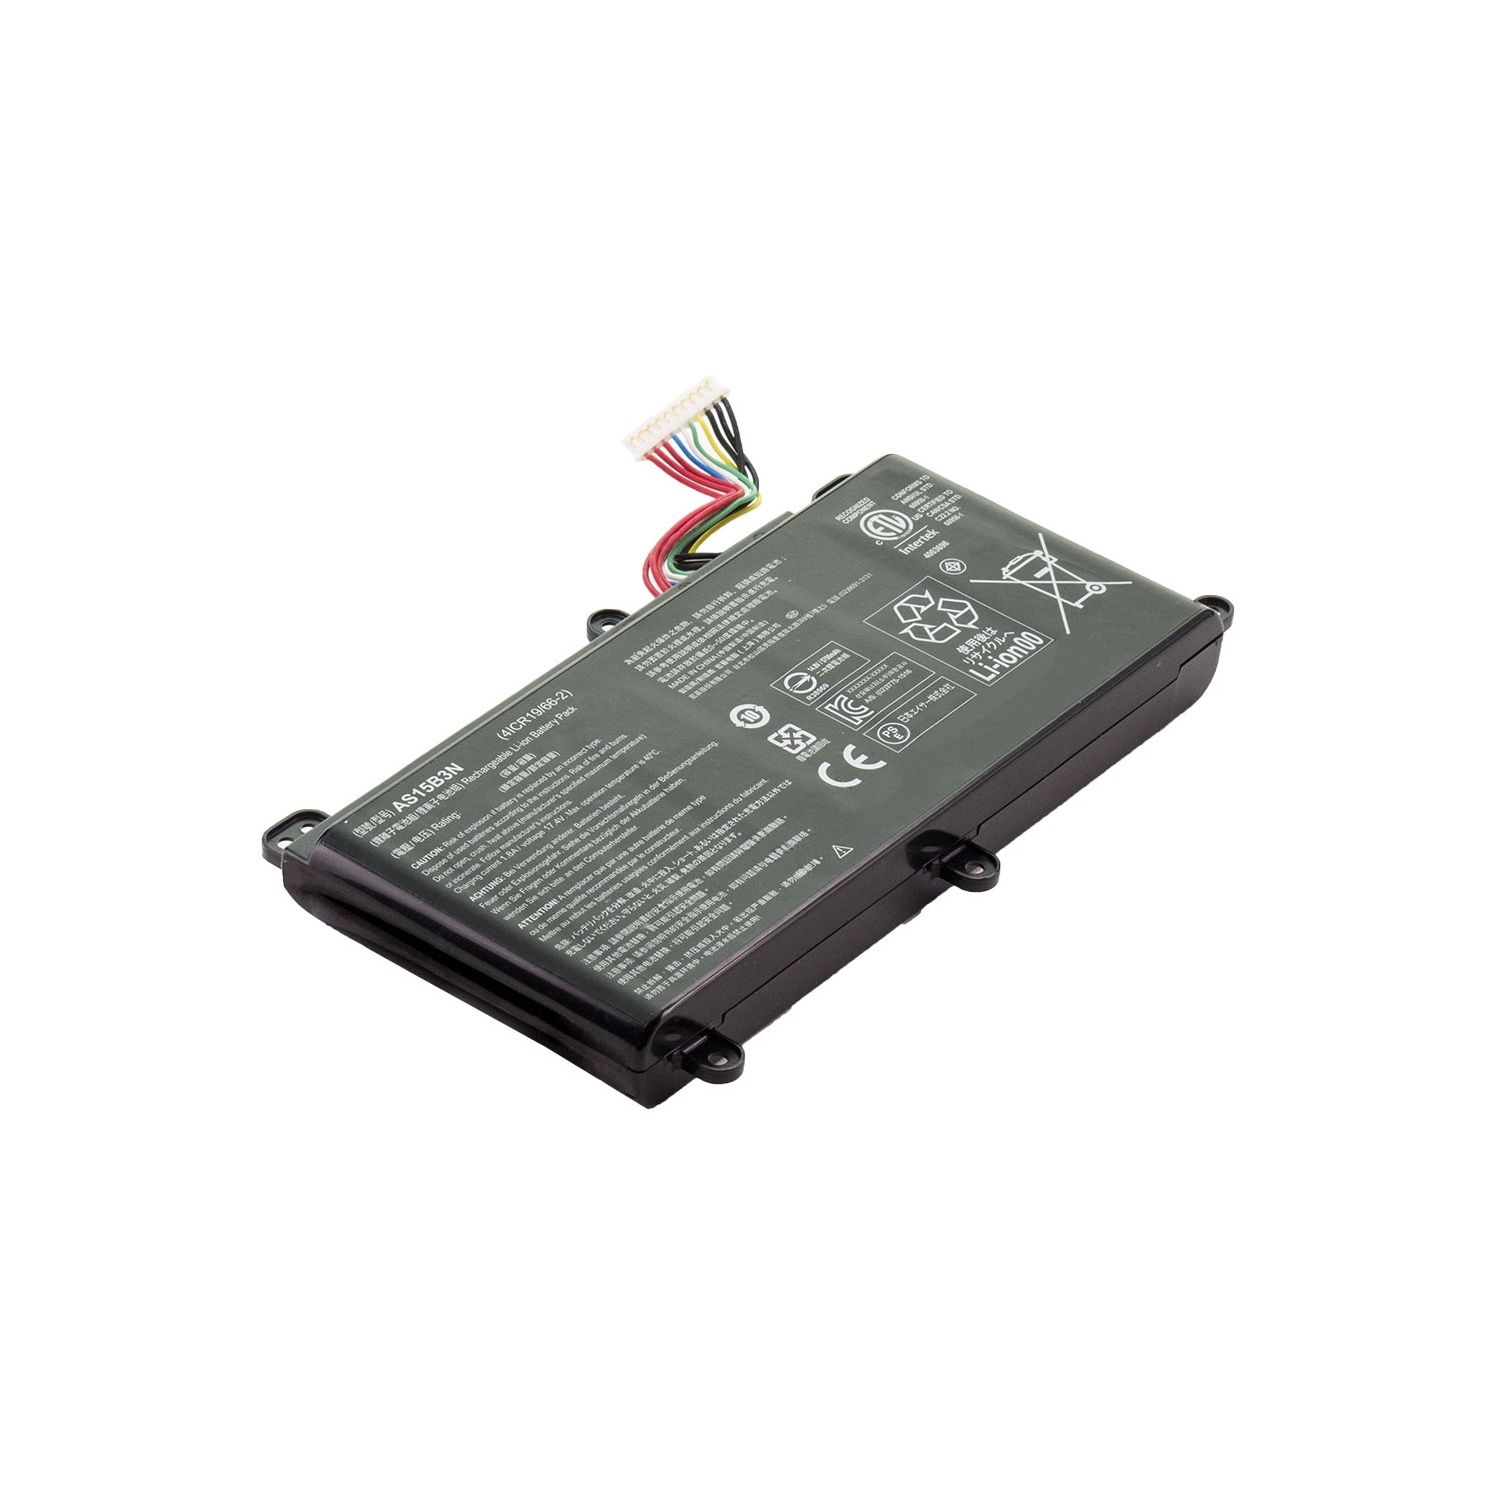 BATTDEPOT NEW Laptop Battery for Acer Predator 15 G9-591-79KE AS15B3N KT.00803.004 KT.00803.005